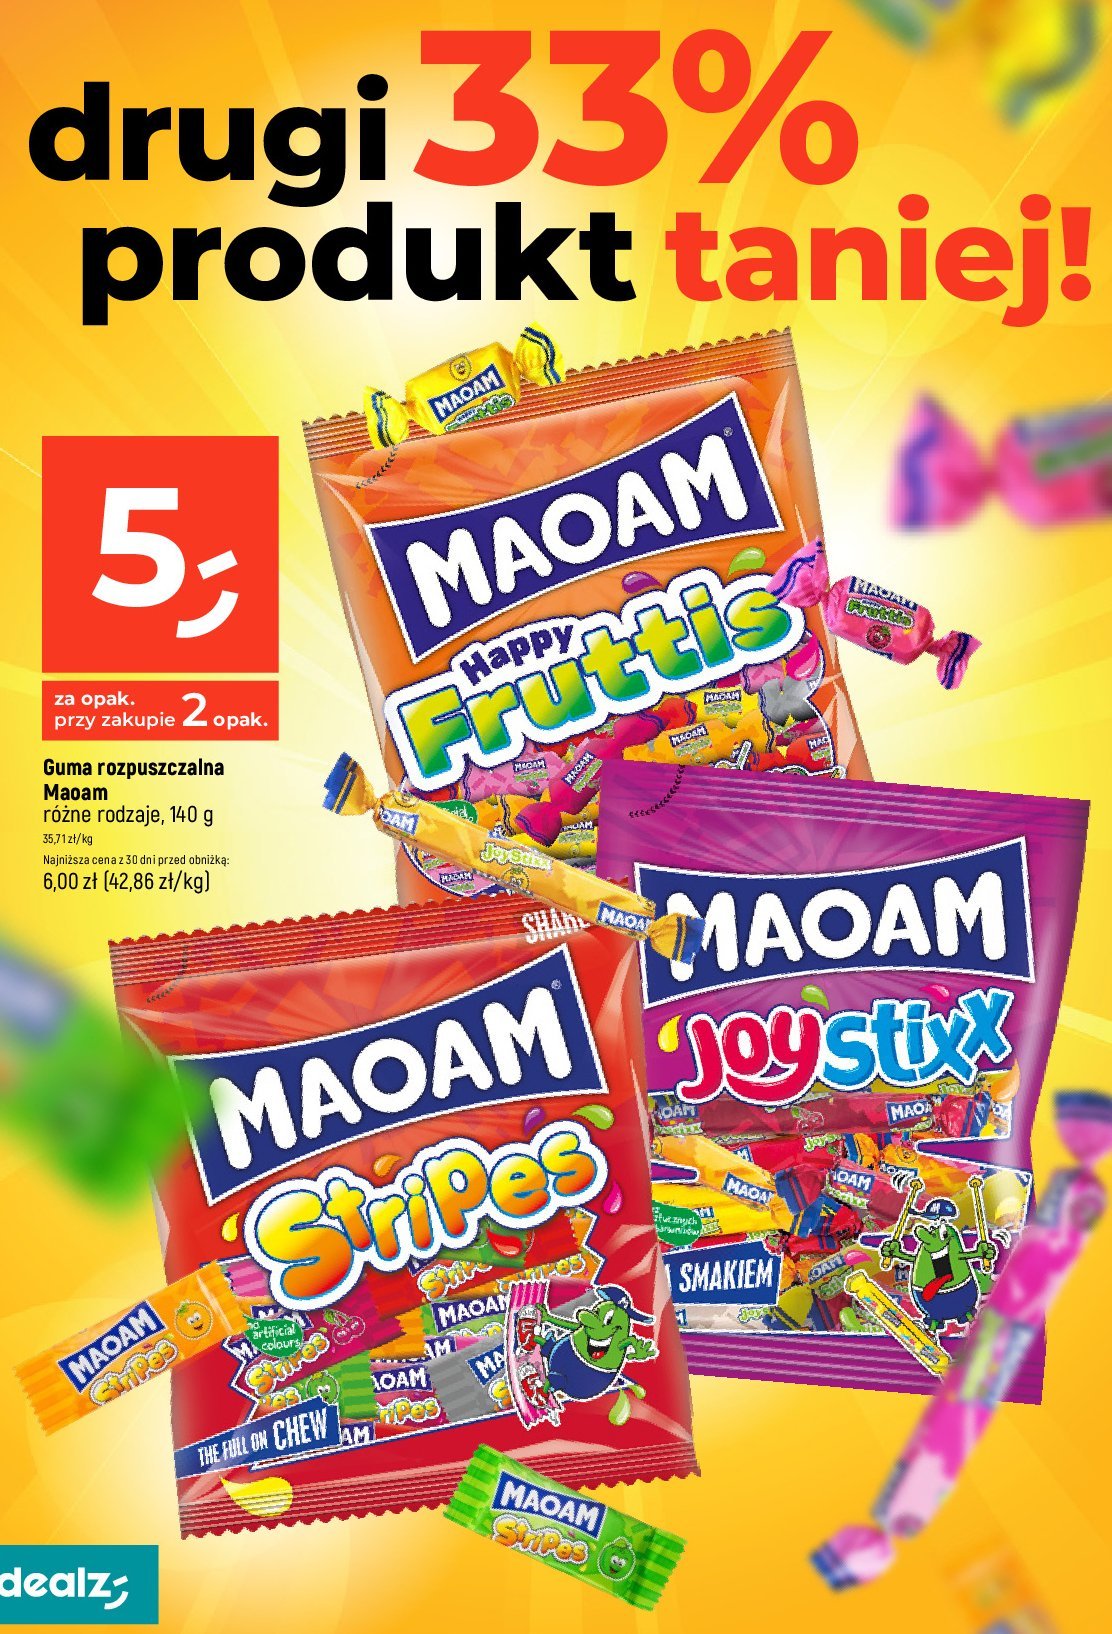 Cukierki rozpuszczalne stripes Haribo maoam promocja